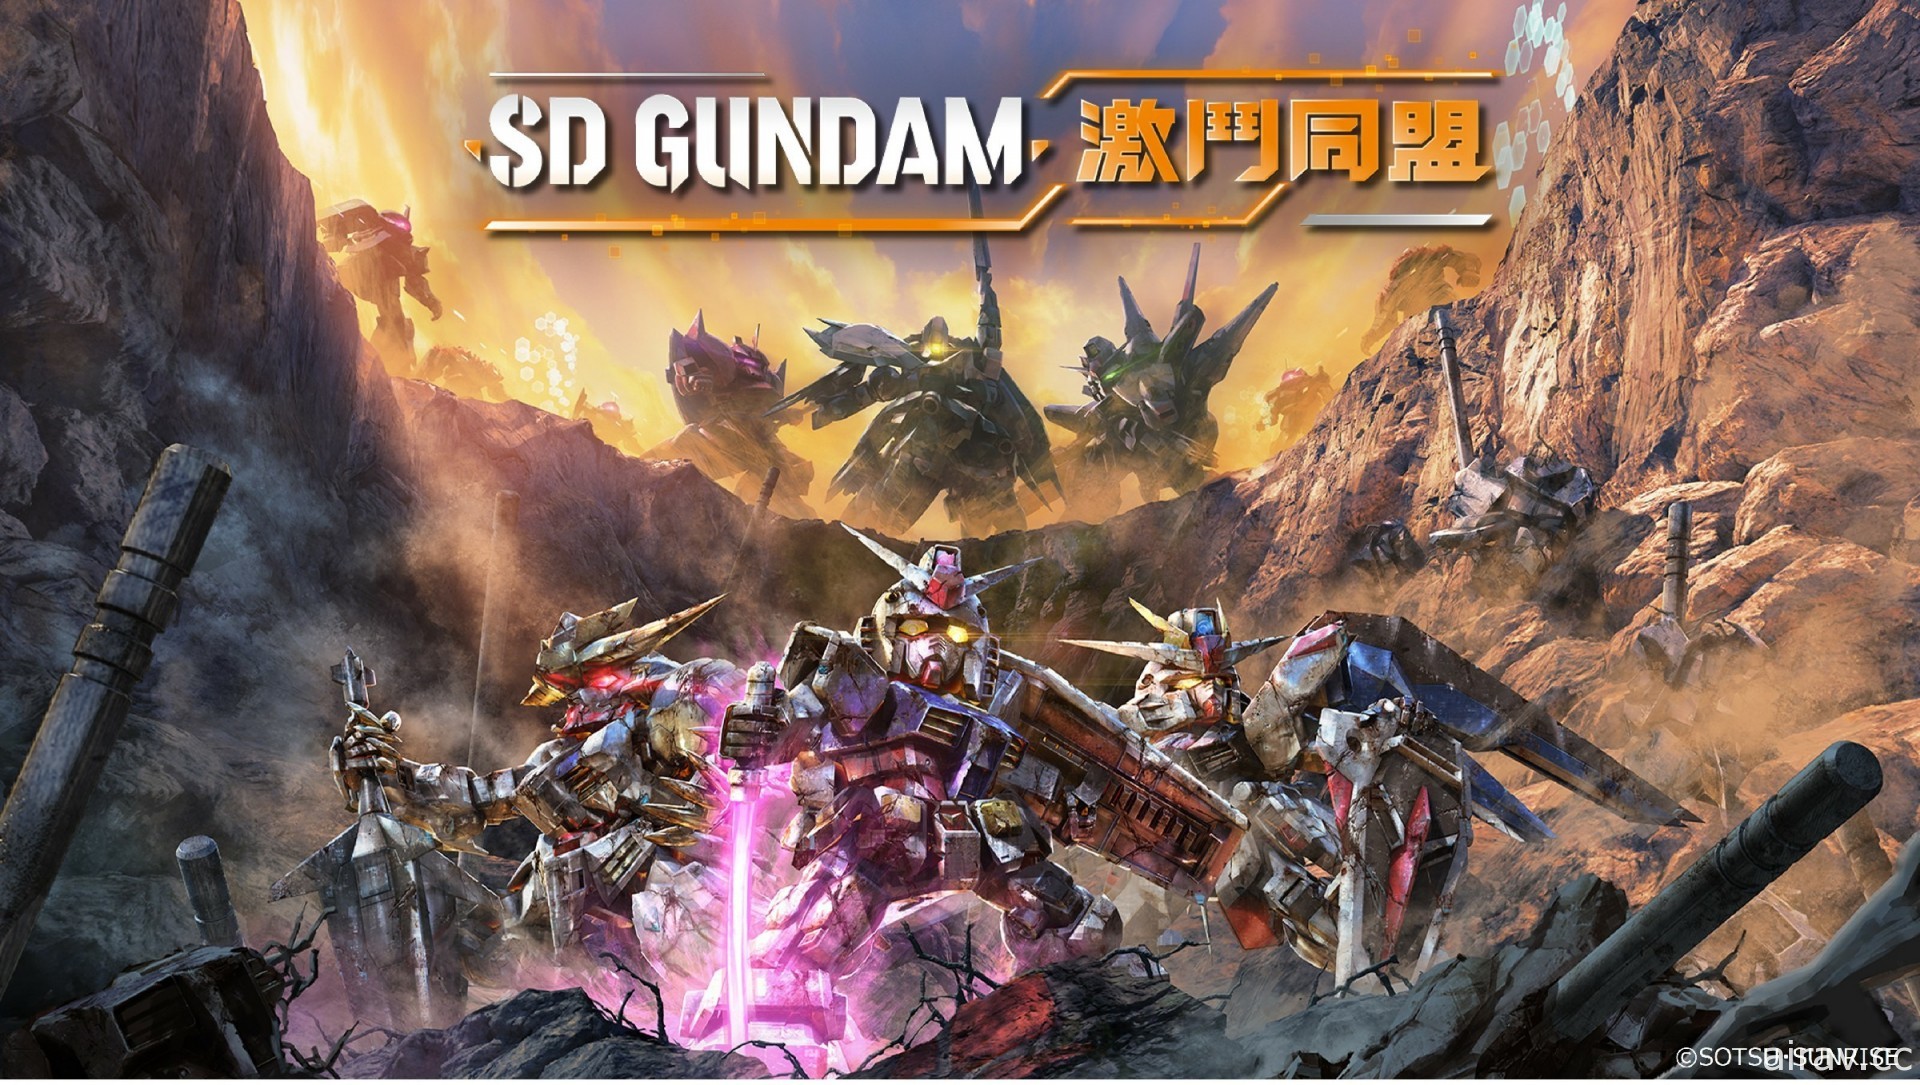 钢弹系列游戏作品直播节目“GUNDAM GAME FEST”将于 5 月 27 日全球播出